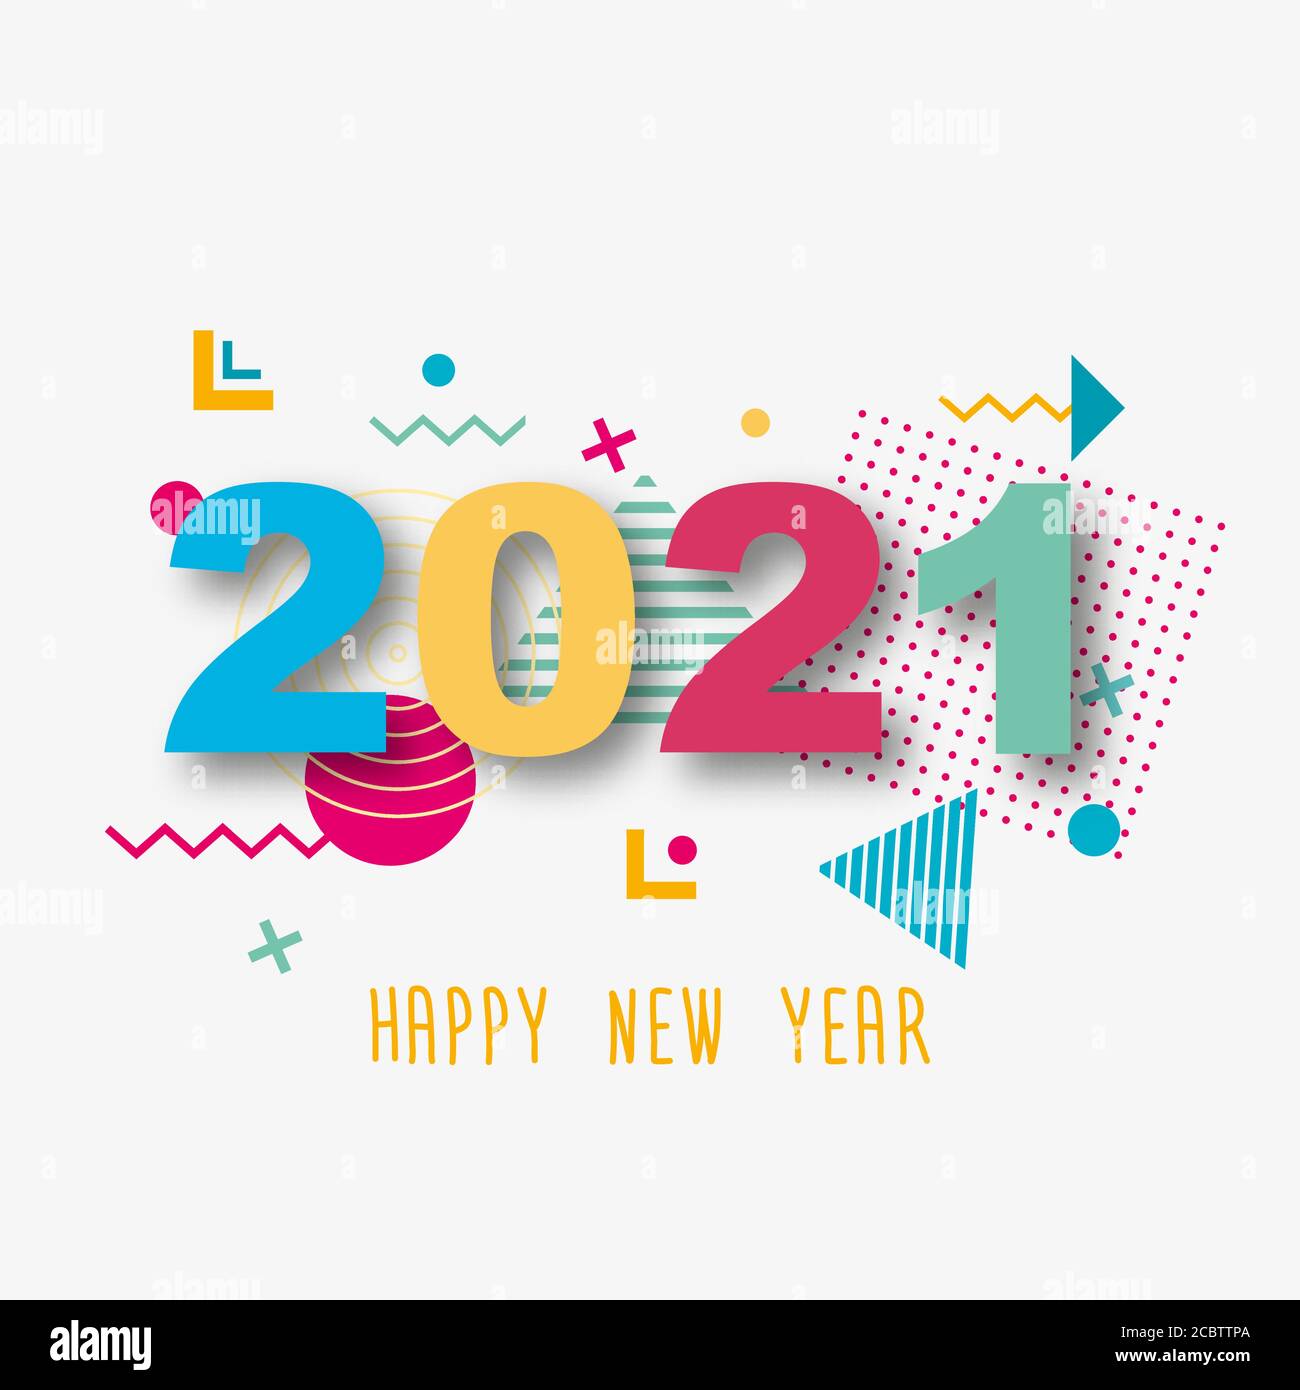 Bonne année 2021. Papier des nombres 3d sur un arrière-plan blanc abstrait. Formes géométriques colorées.Illustration vectorielle. Illustration de Vecteur